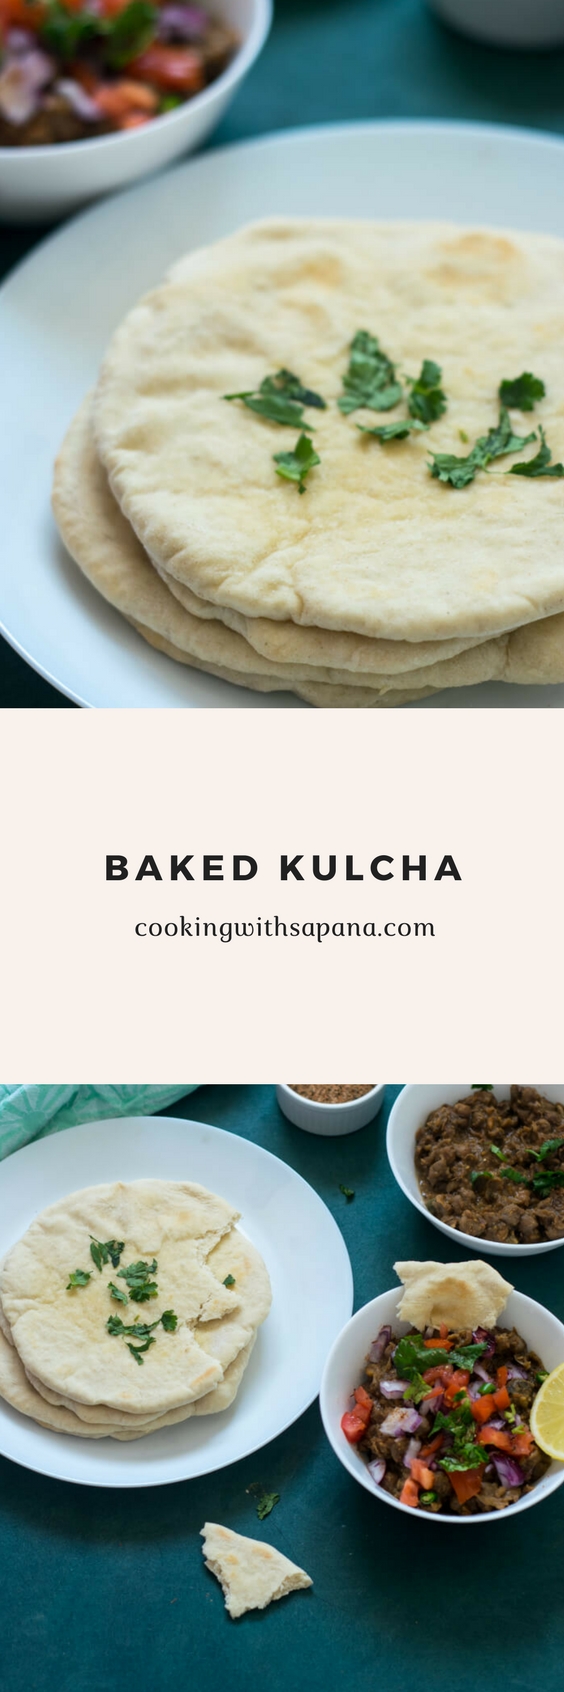 Kulcha Recipe 3